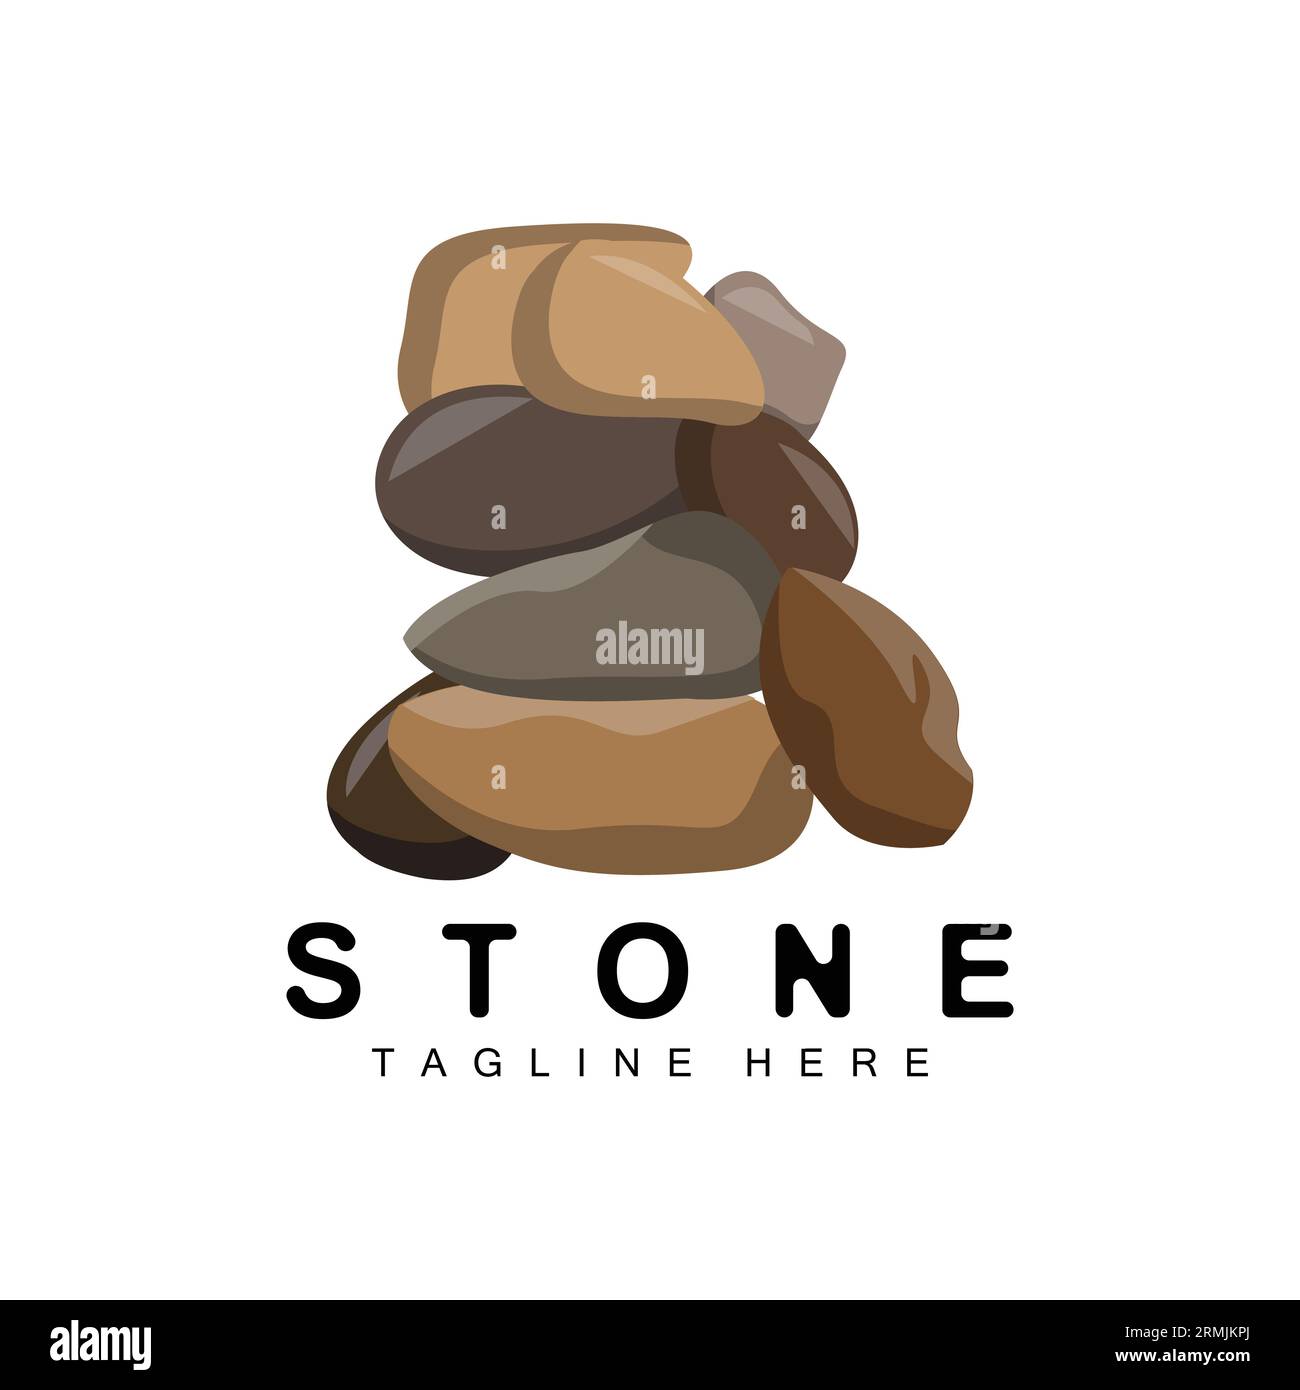 Gestapelter Stein Logo Design, Balancing Stone Vector, Baumaterial Stein Illustration, Bimsstein Illustration Walpapeer Stein Stock Vektor